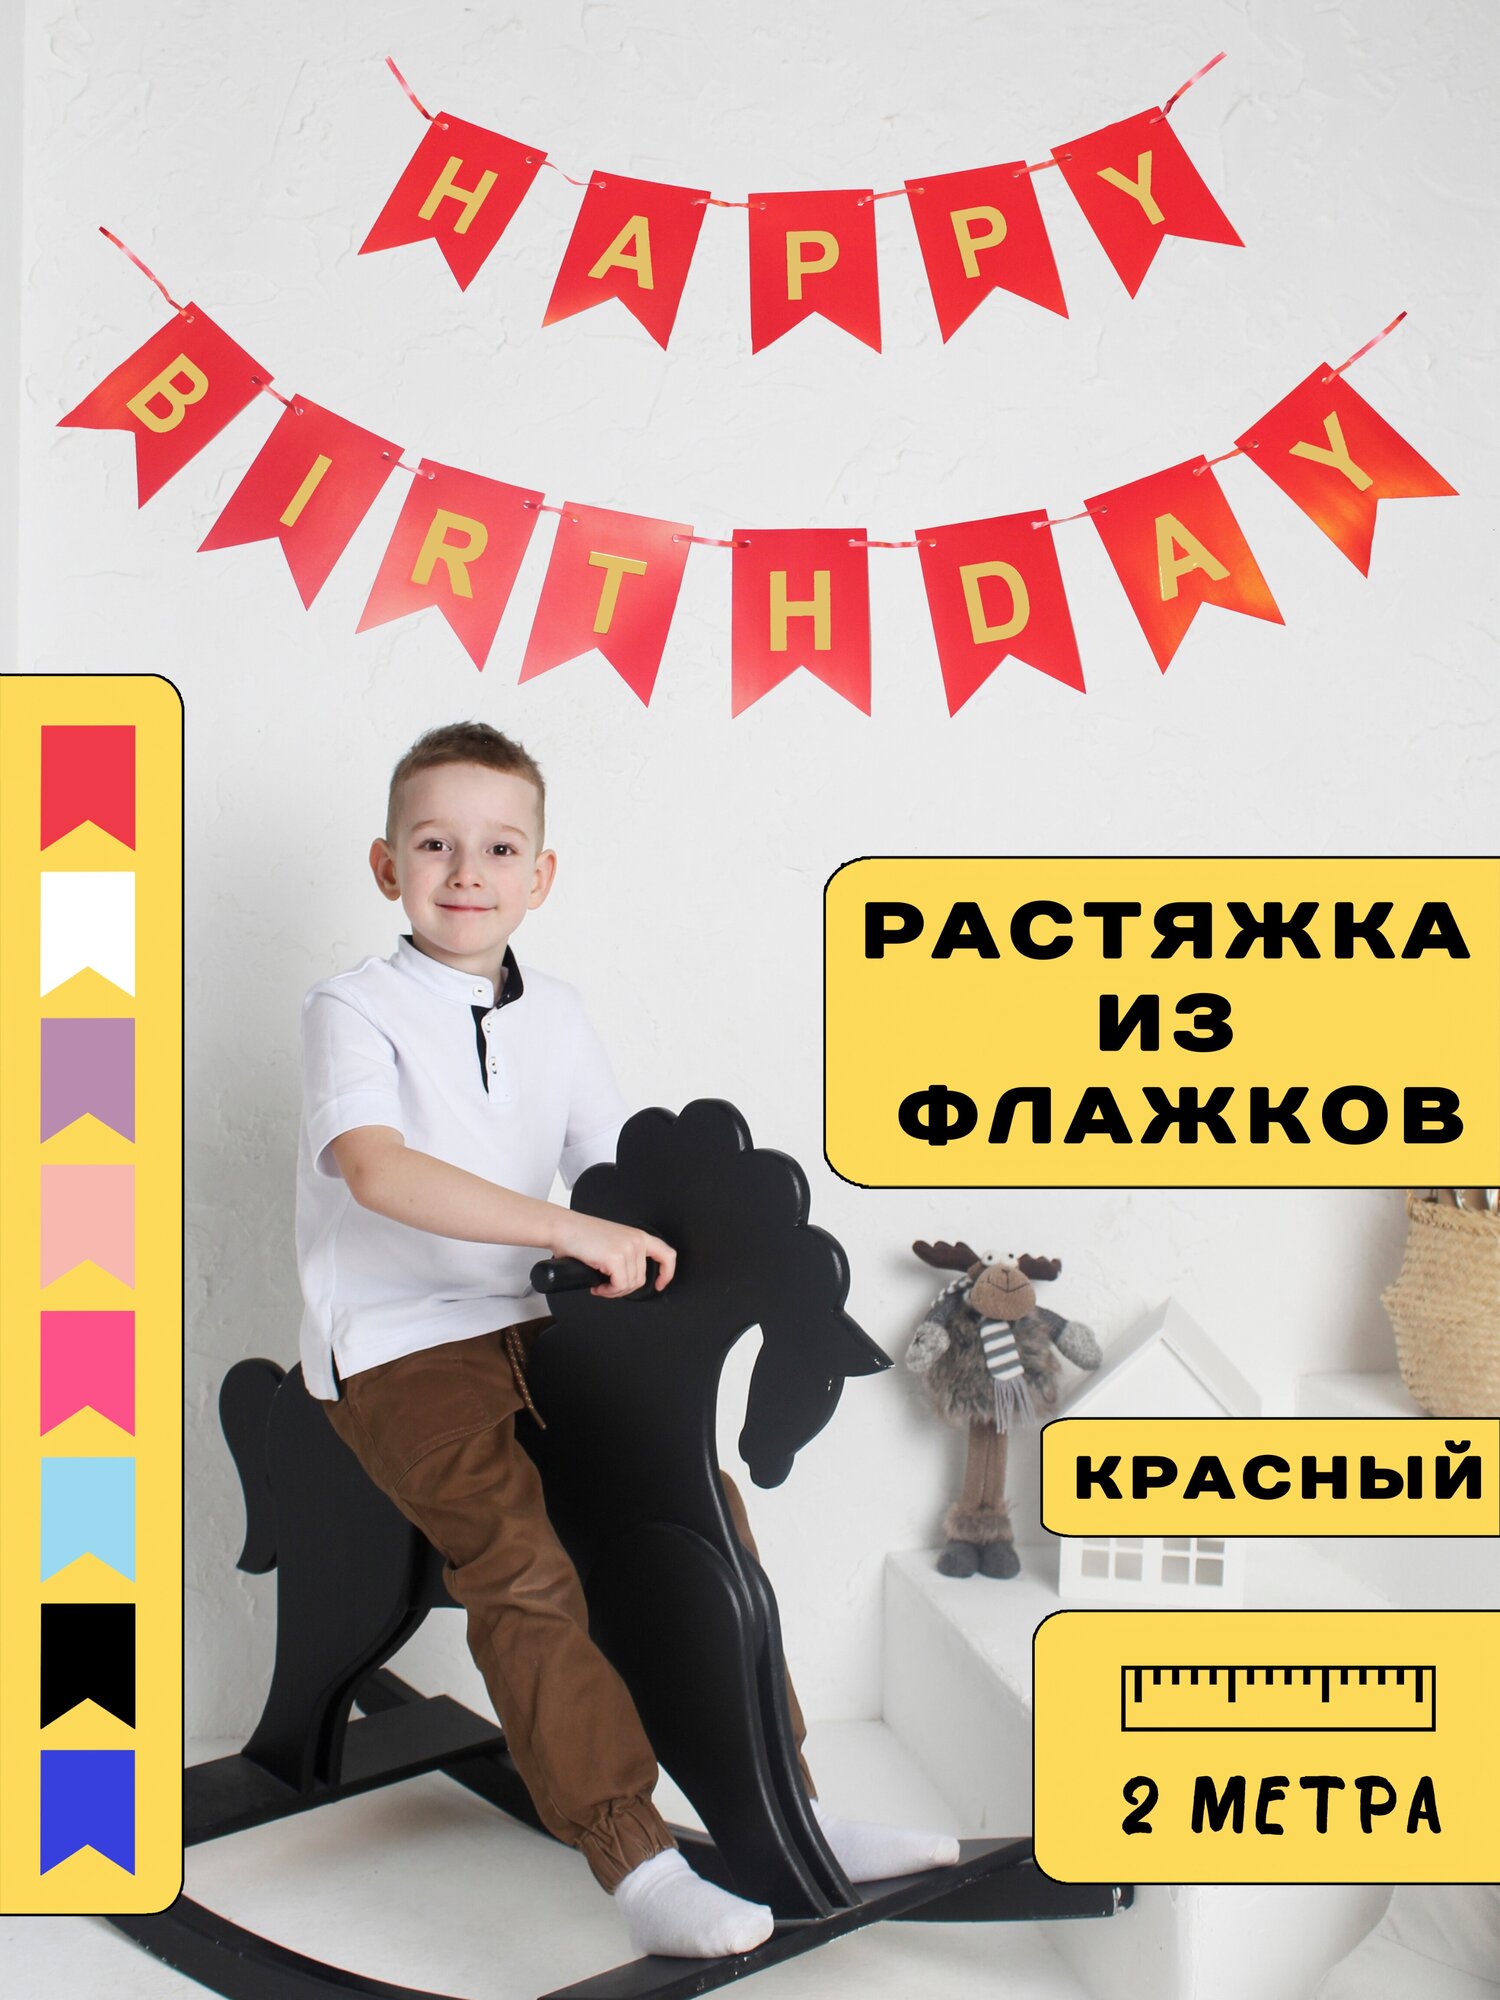 Гирлянда растяжка с днем рождения Happy Birthday для фотозоны и декора